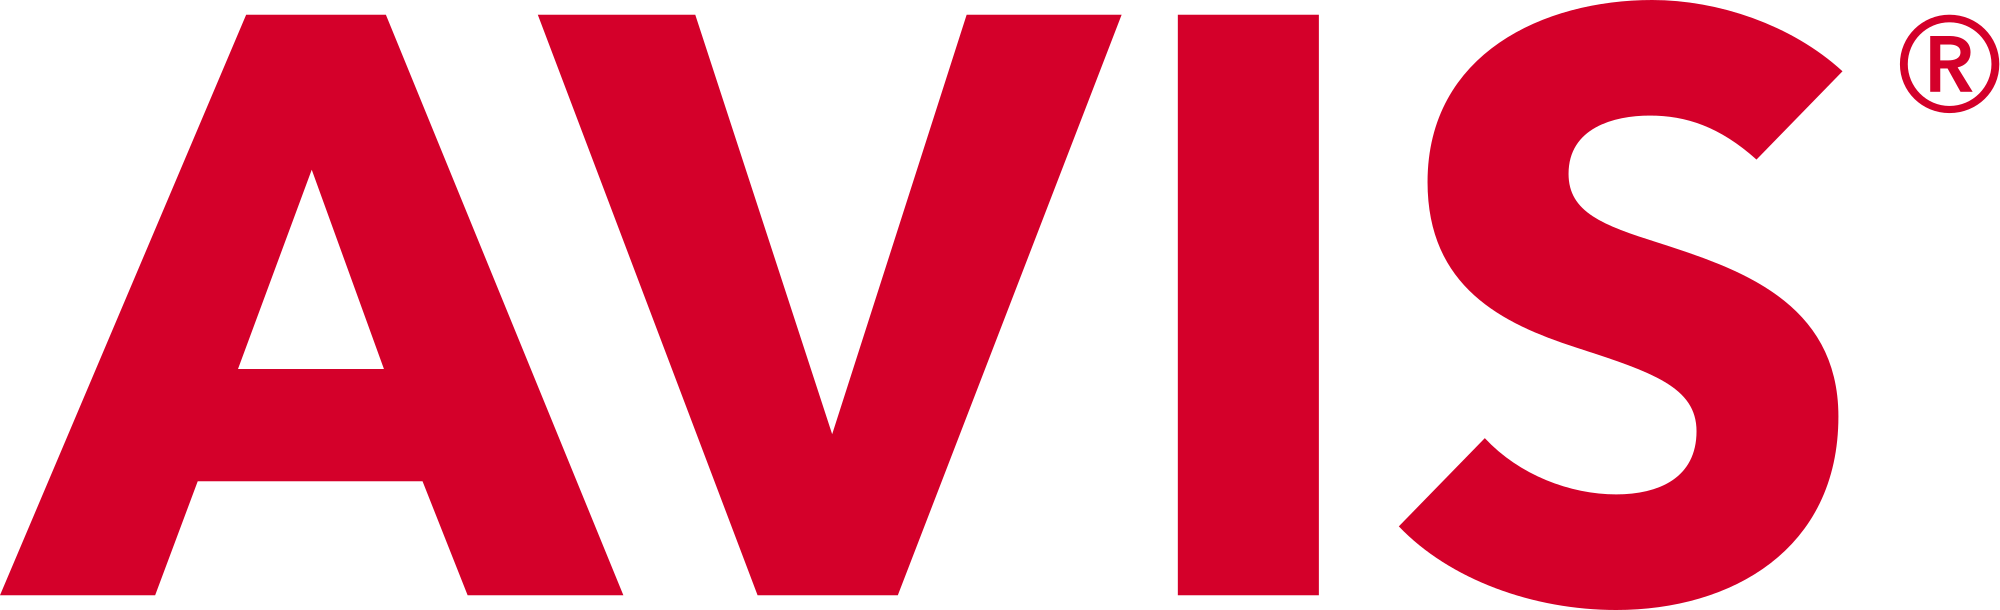 Avis Logo - File:AVIS logo 2012.svg - Wikimedia Commons